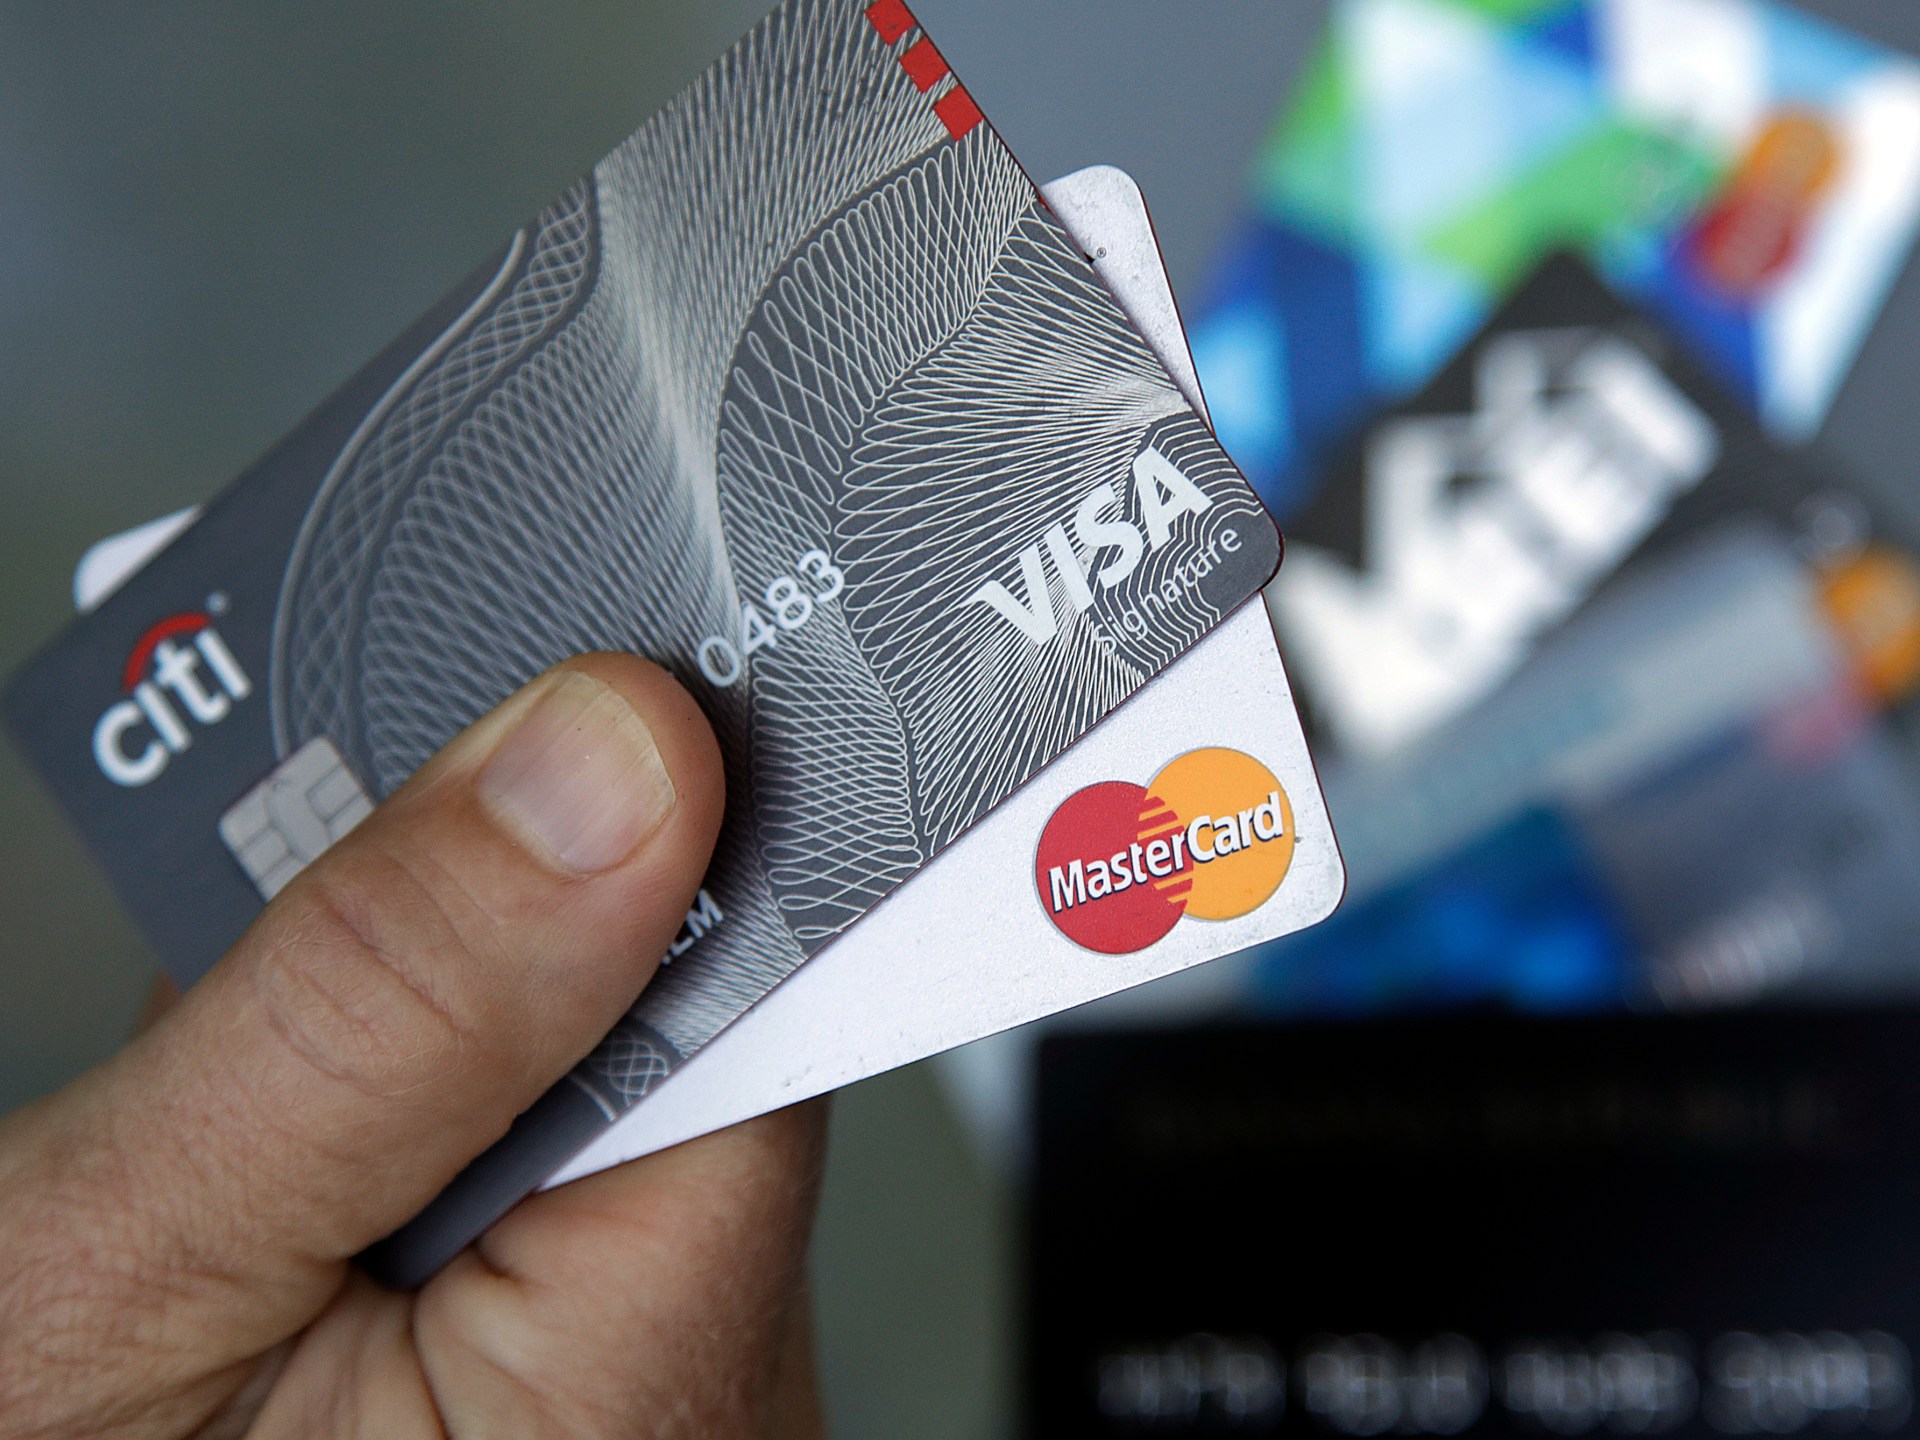 Visa et Mastercard parviennent à un règlement de 30 milliards de dollars sur les frais de carte de crédit |  Actualités économiques et commerciales